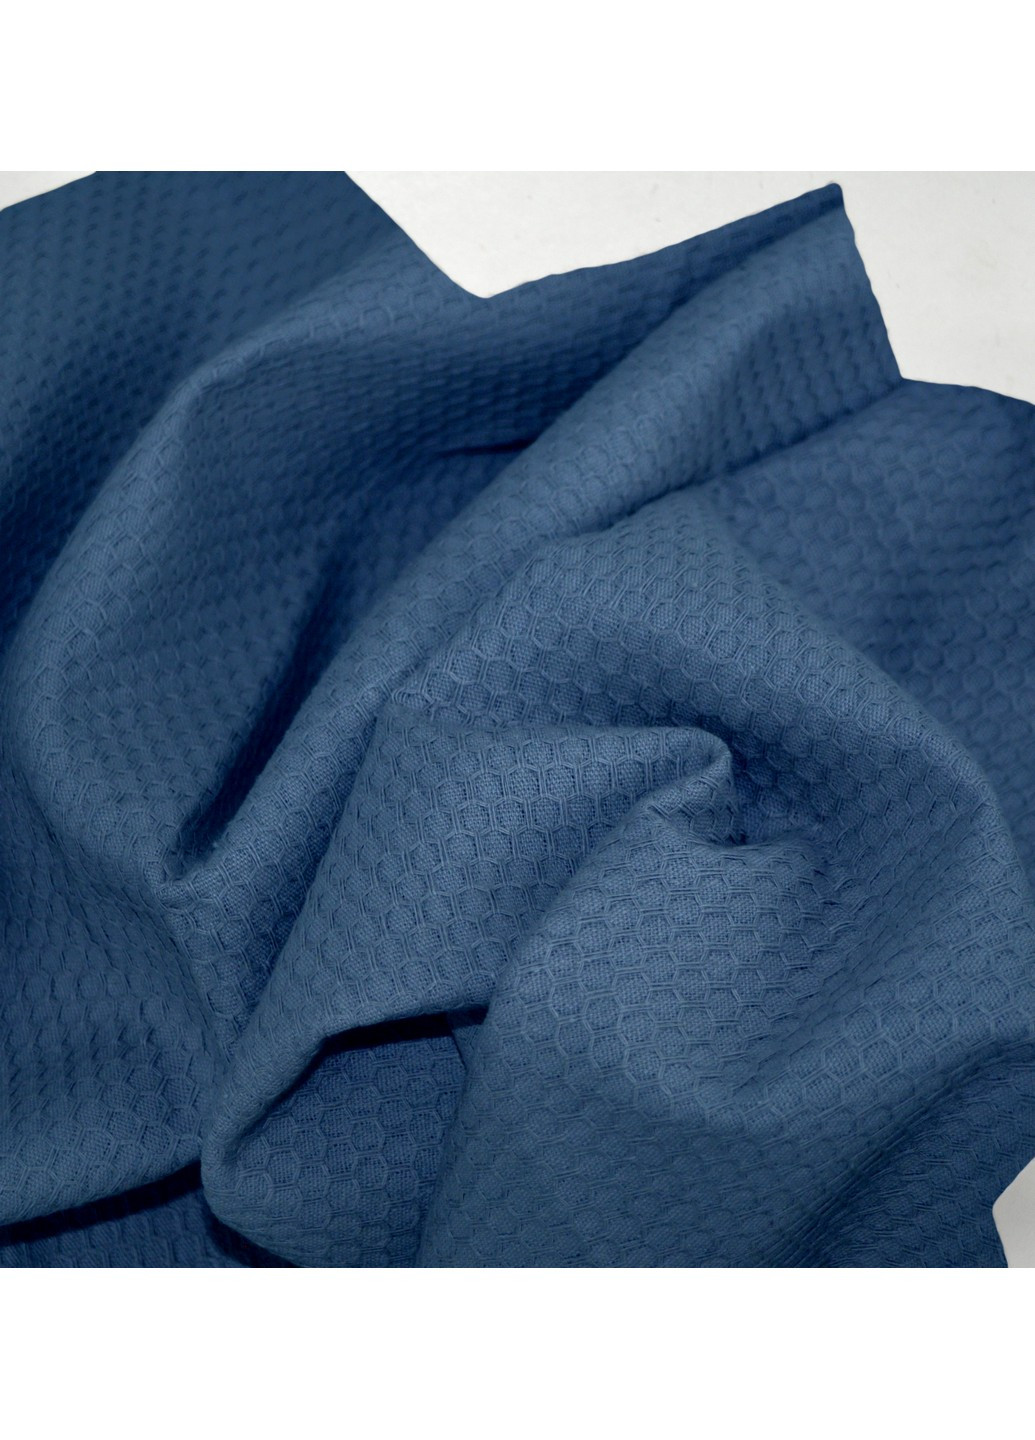 Cosas полотенце waffle blue (75х130 см) однотонный синий производство - Украина